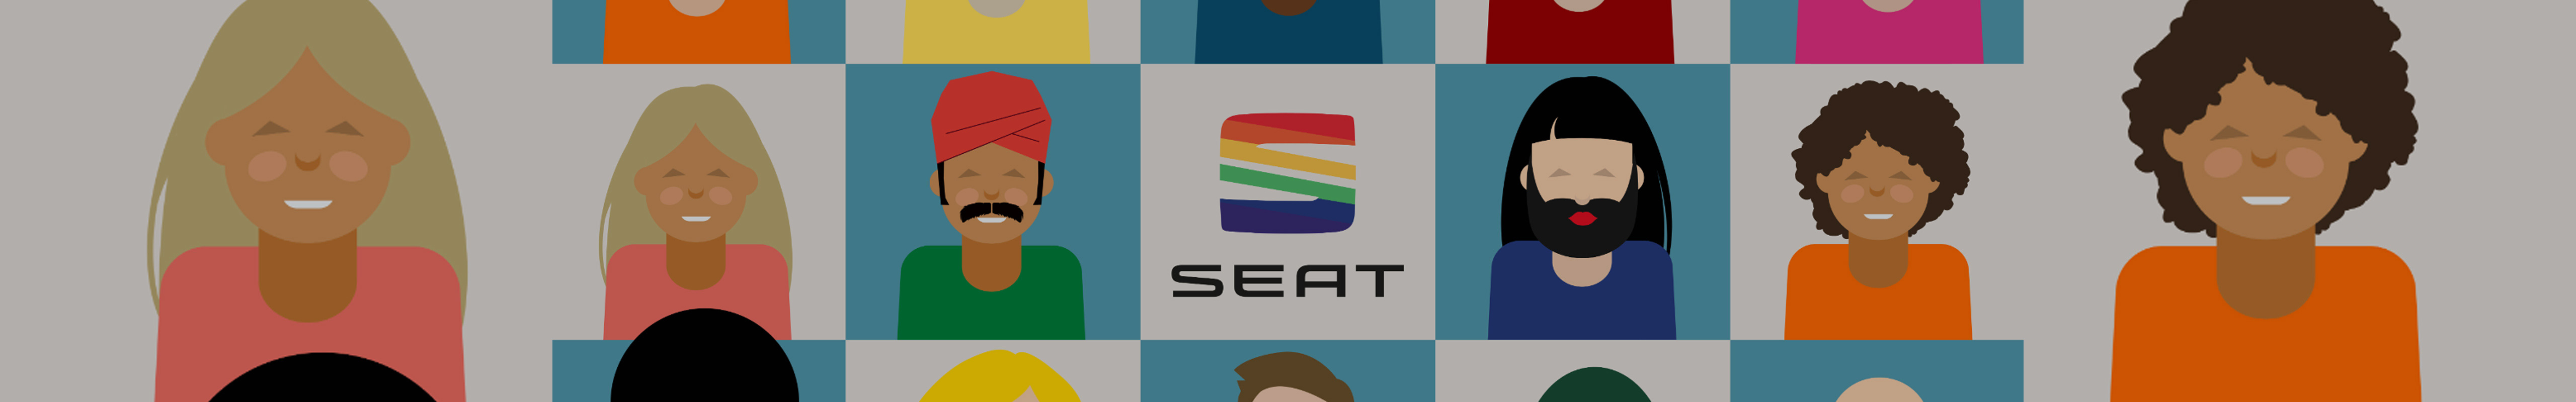 SEAT verstärkt Engagement im Bereich Diversity & Inklusion